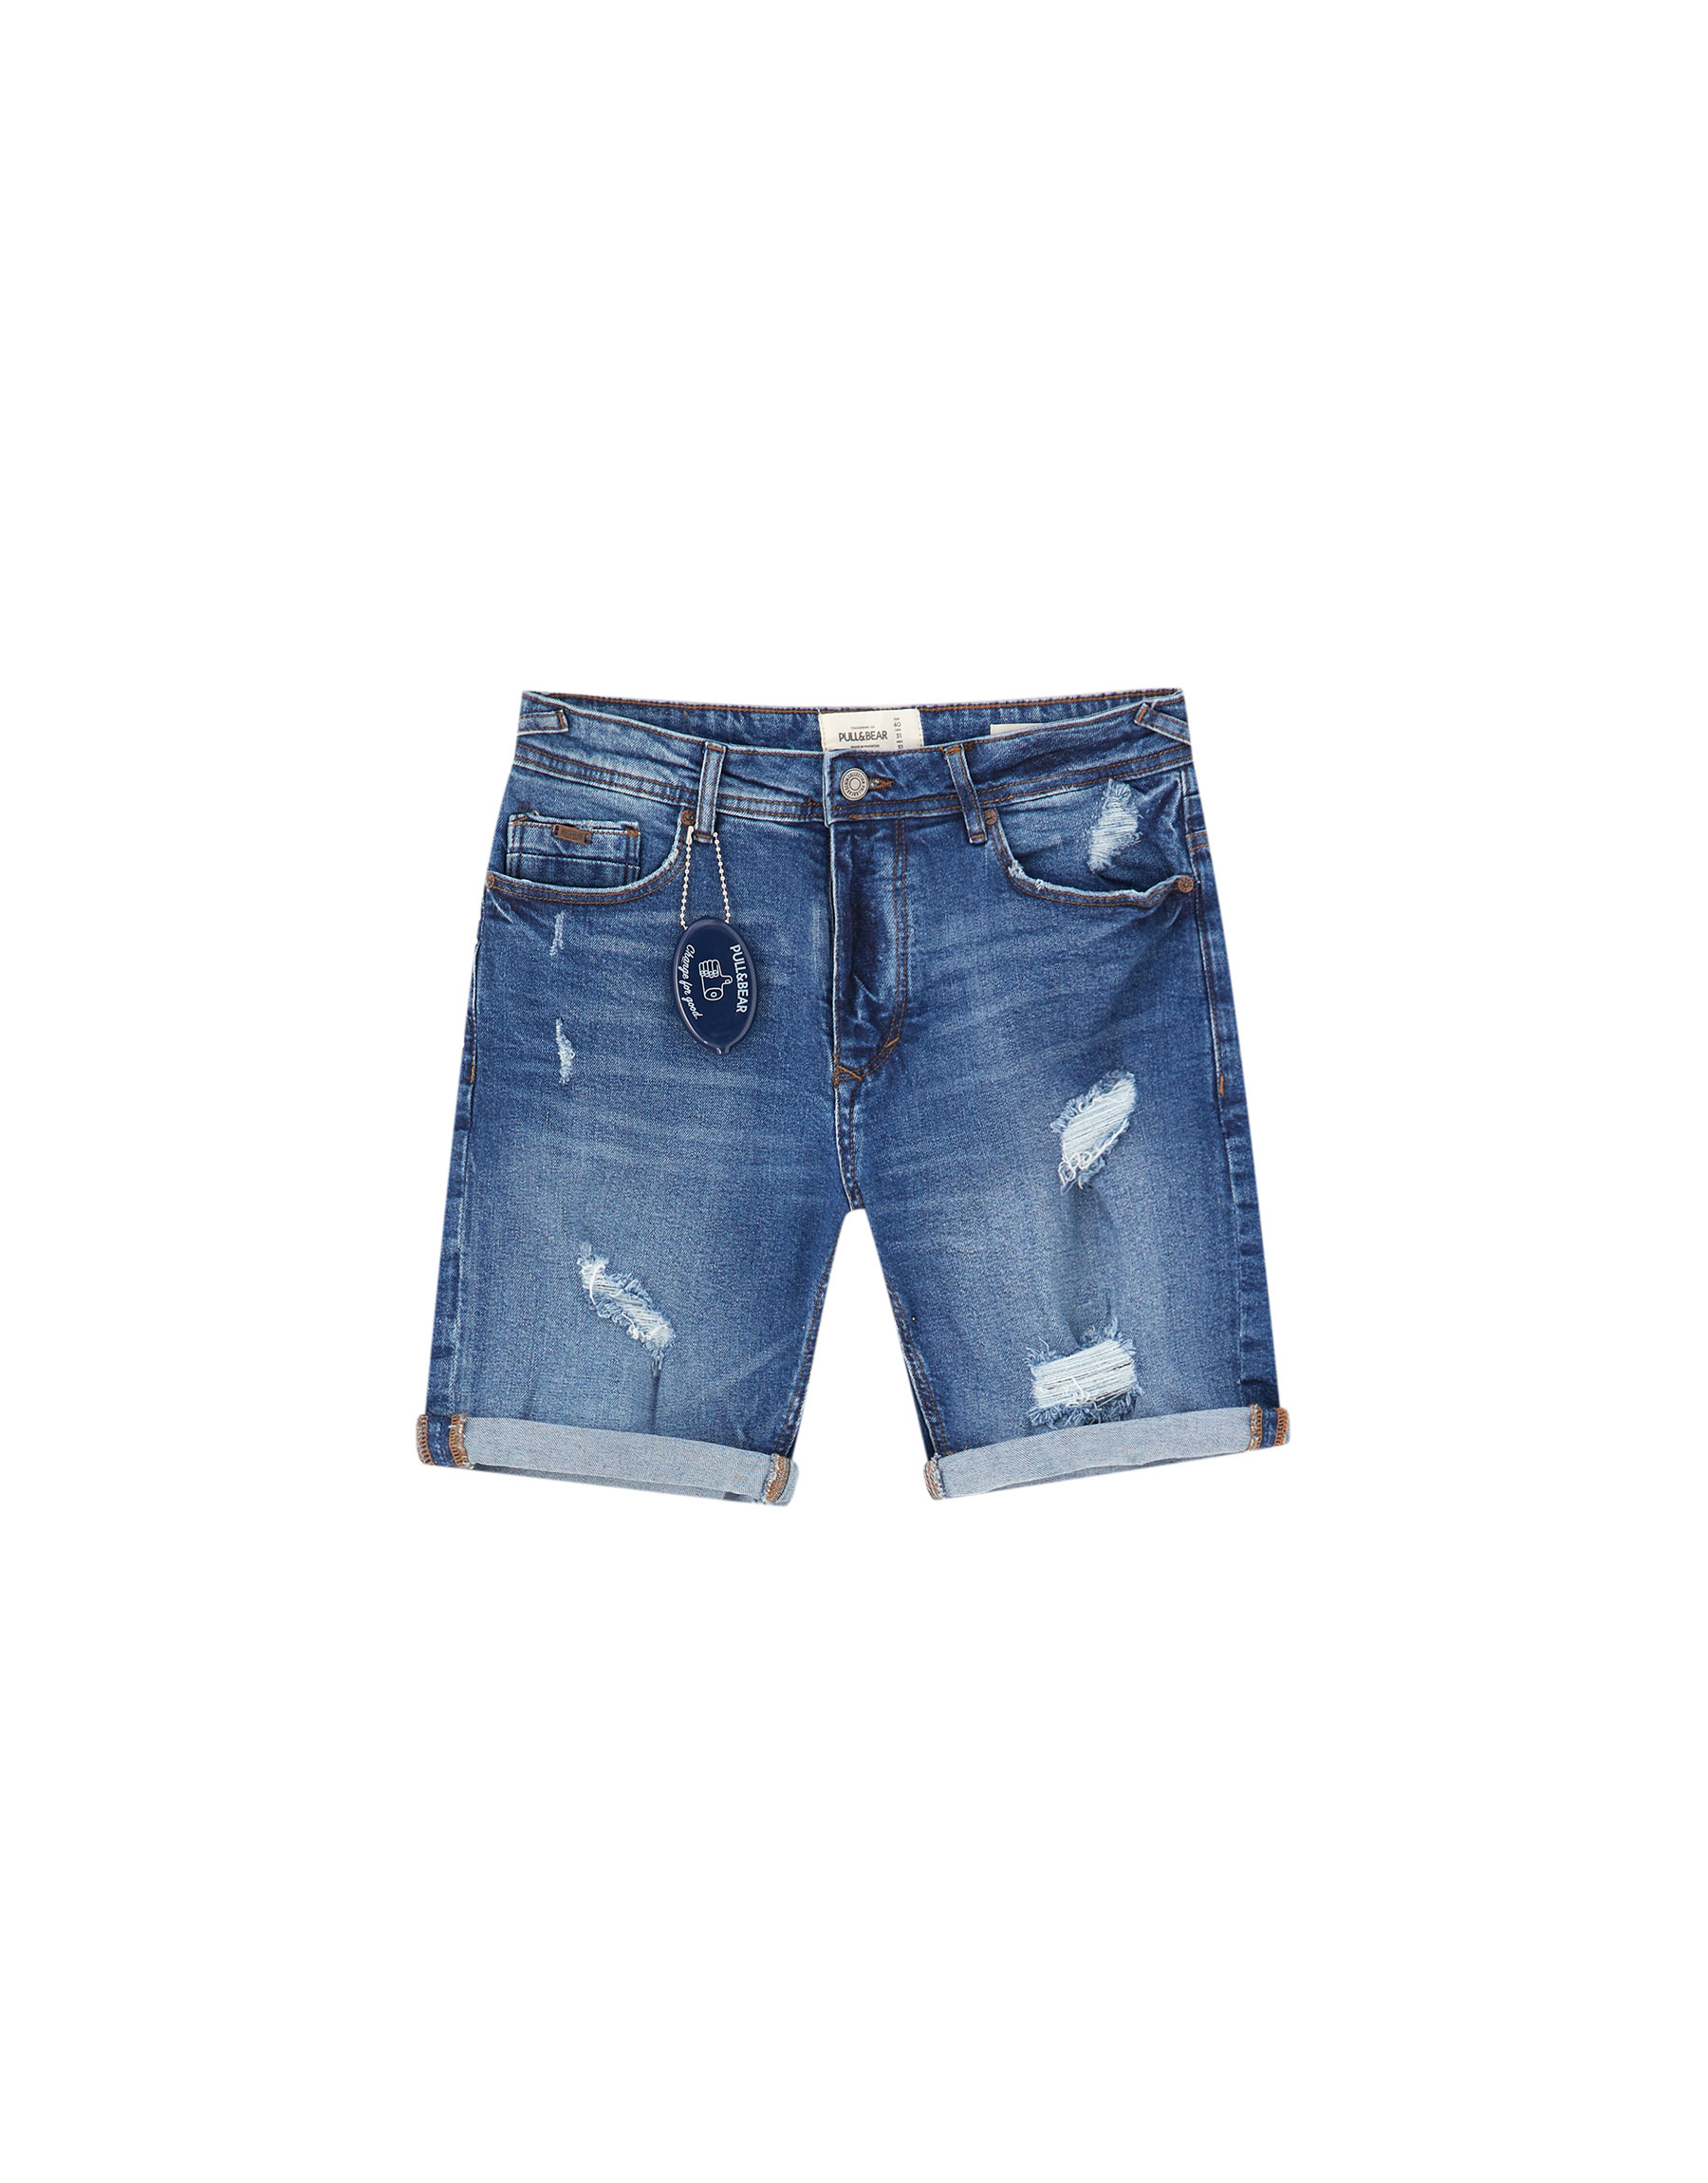 ИНДИГО Базовые джинсовые шорты с разрывами Pull & Bear